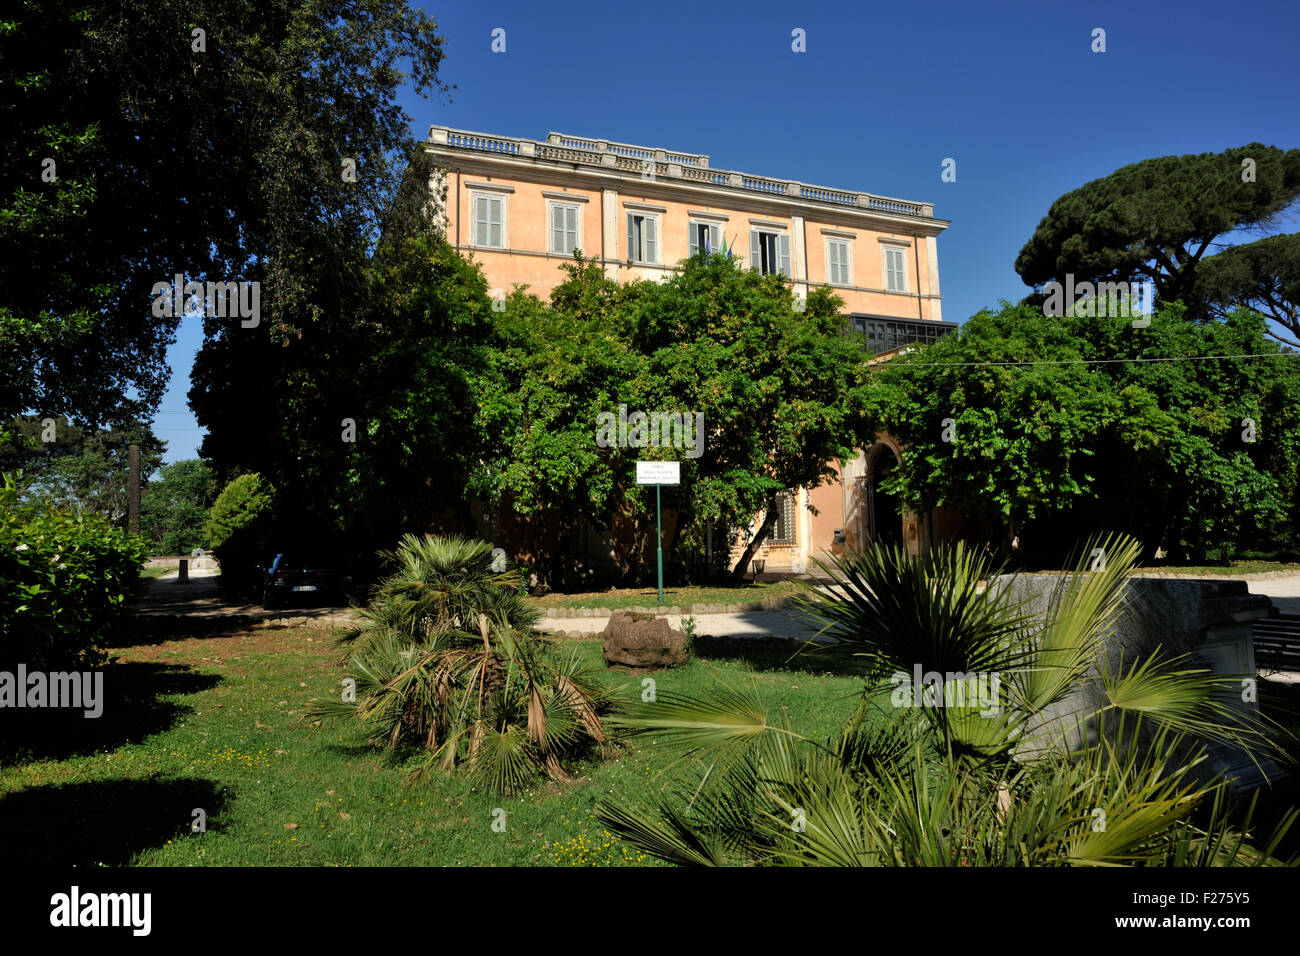 Italia, Roma, Celio, Villa Celimontana, palazzo della Società geografica Italiana Foto Stock